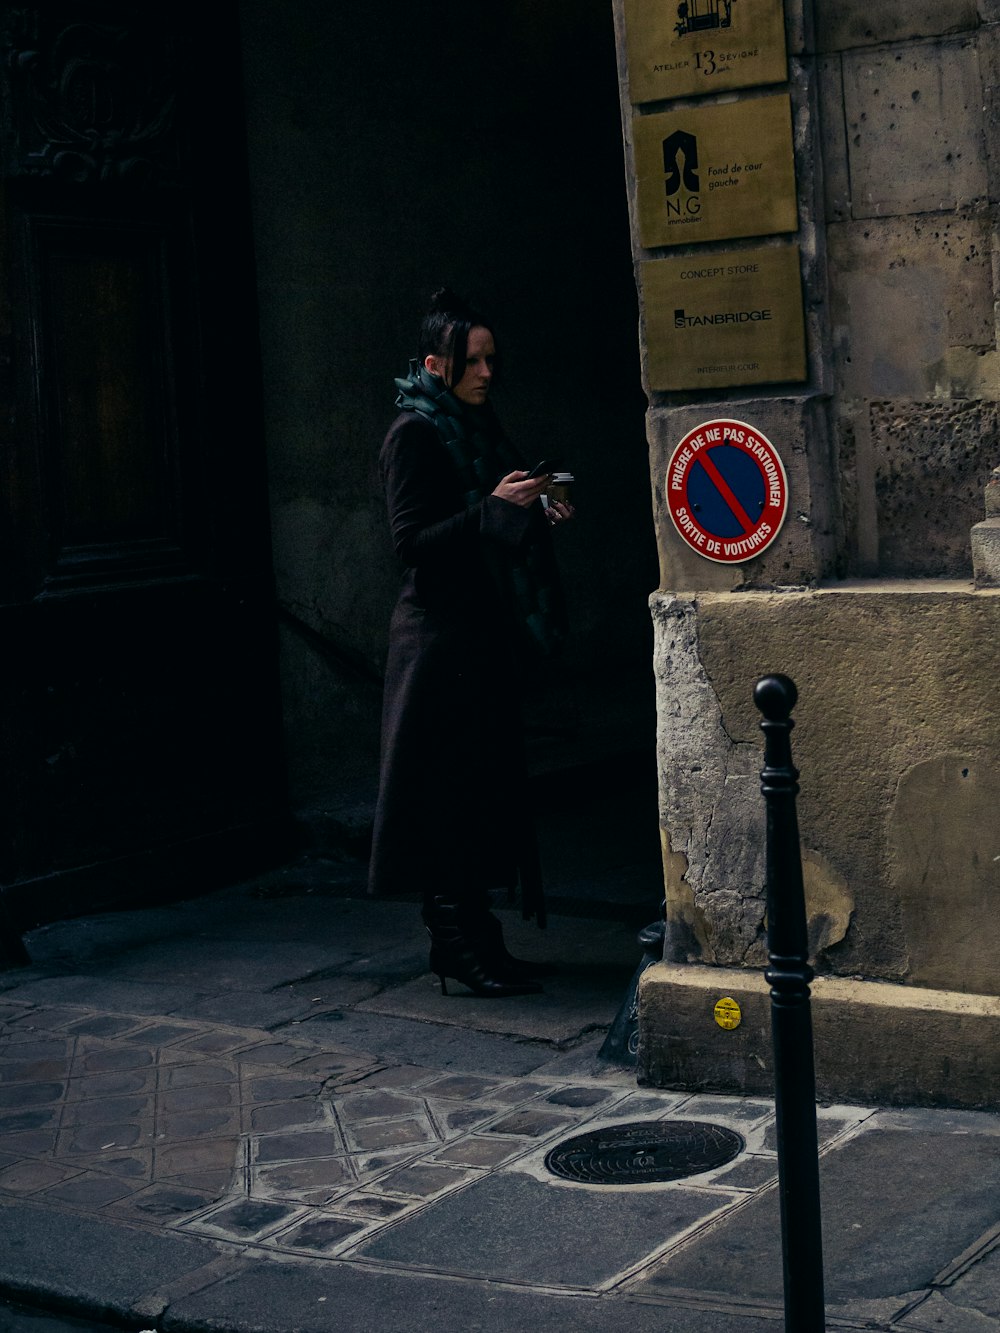 Un hombre parado frente a un edificio mirando su teléfono celular